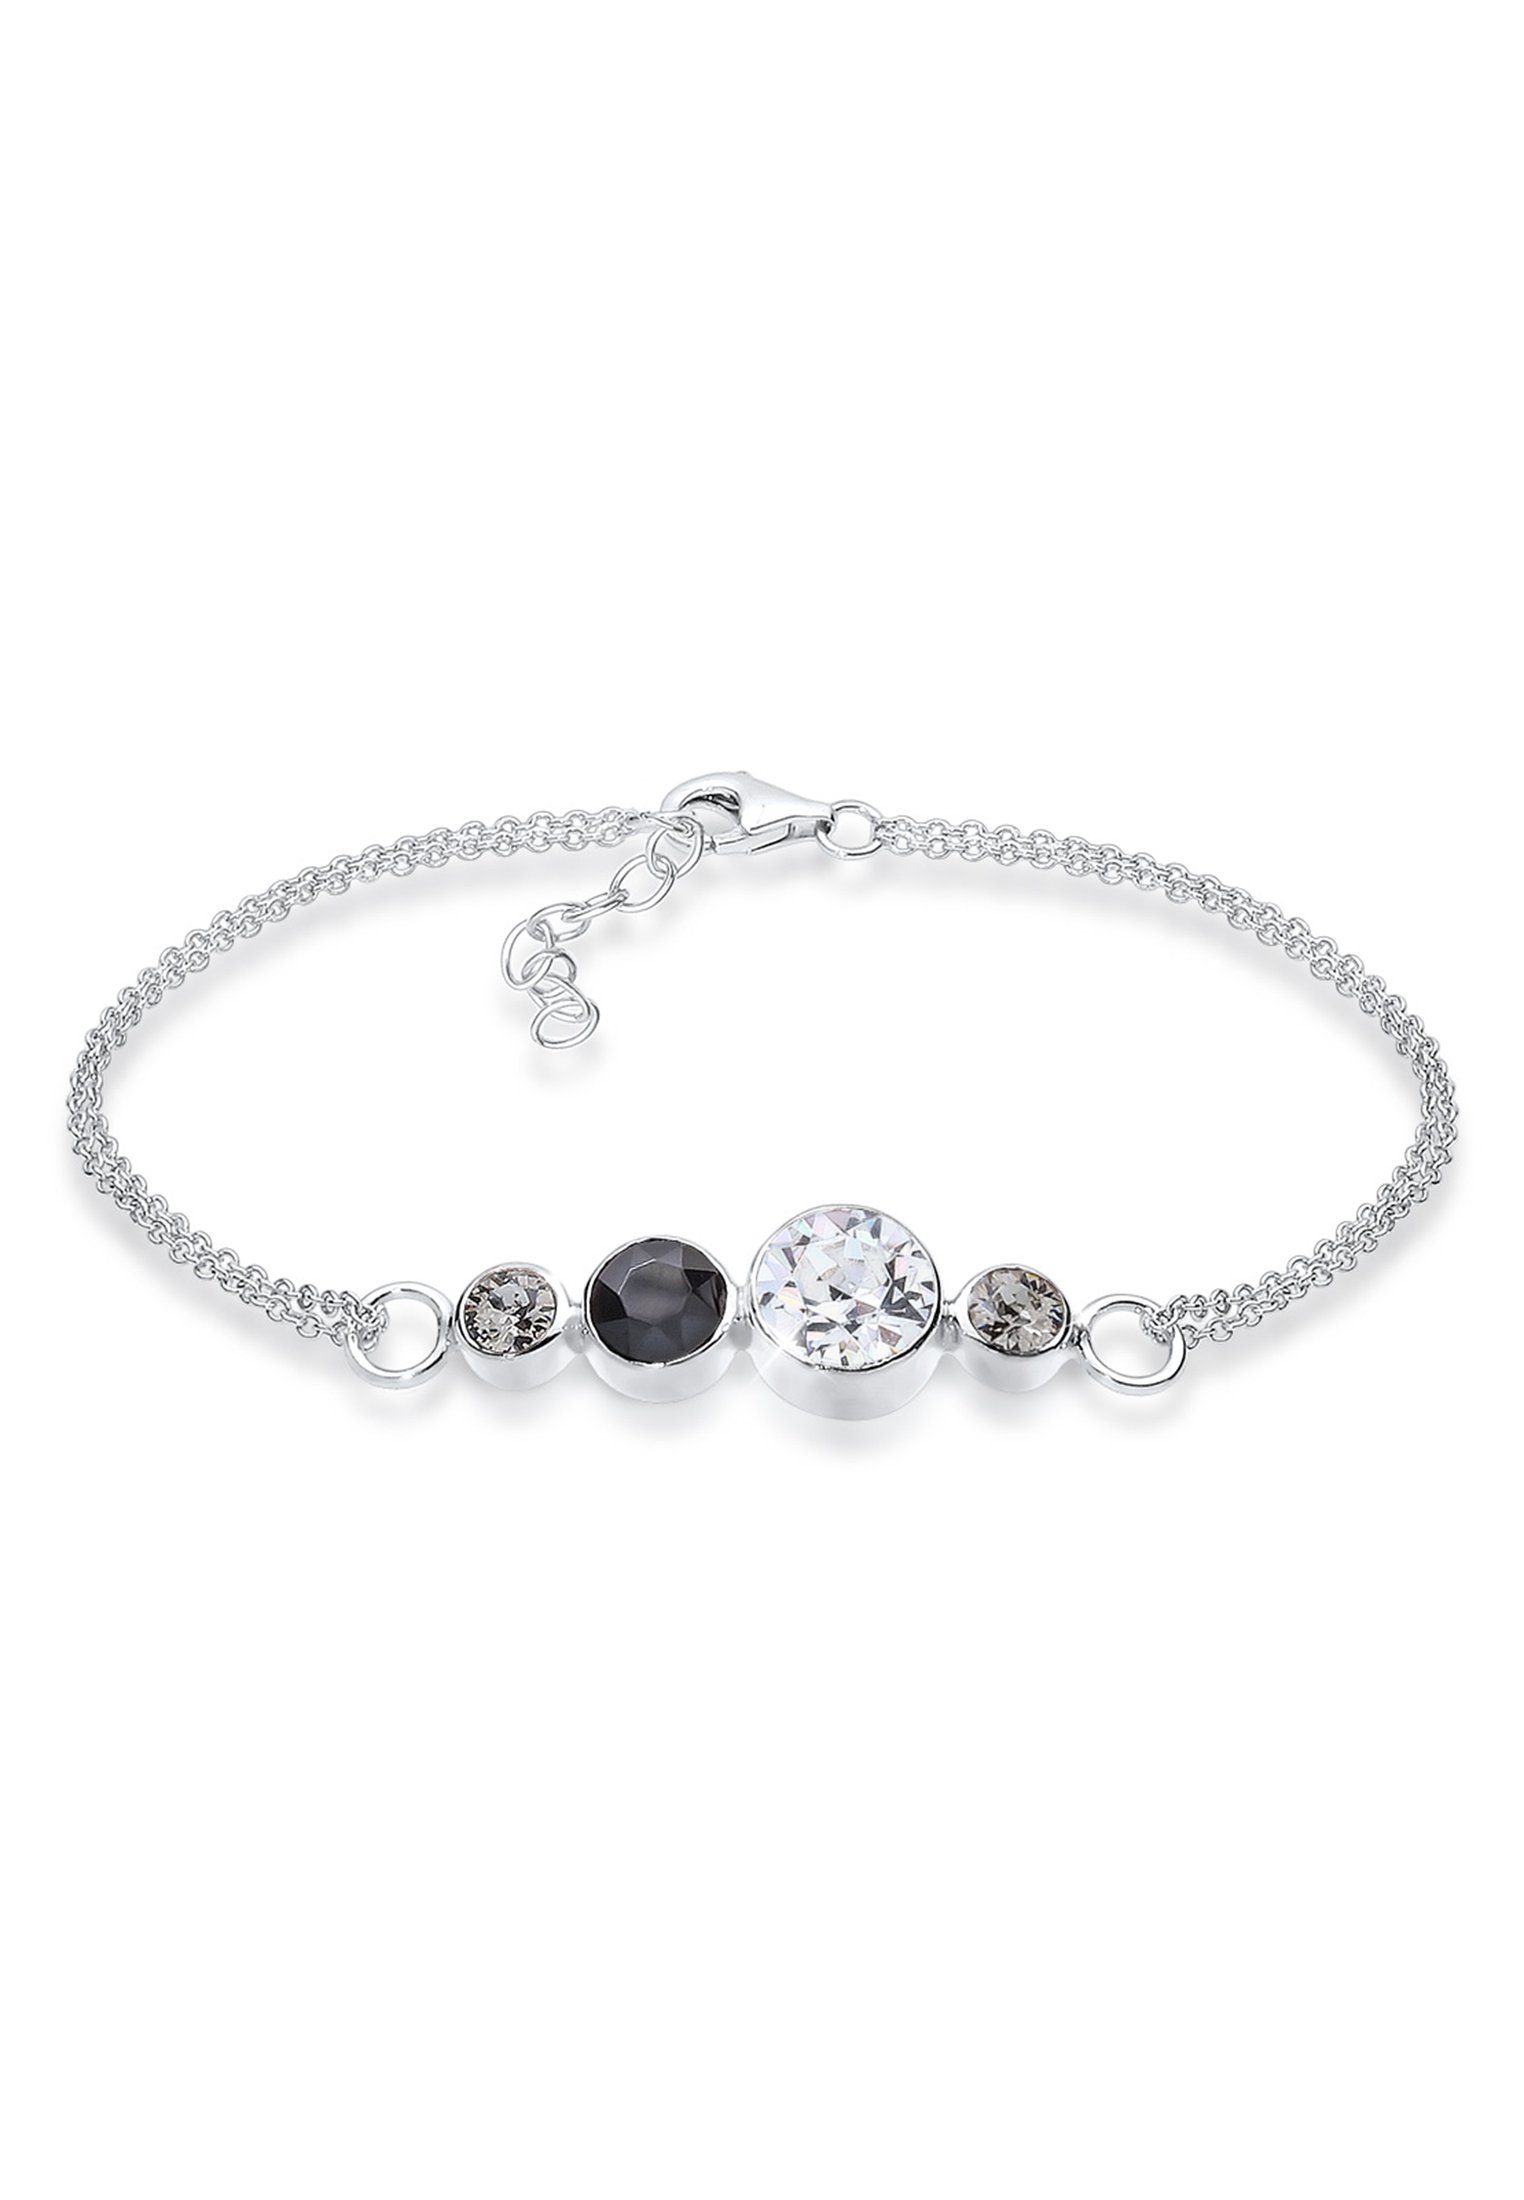 Elli Armband Verspielt Kristalle 925 Sterling Silber, In sehr hochwertiger  Juweliersqualität gefertigt